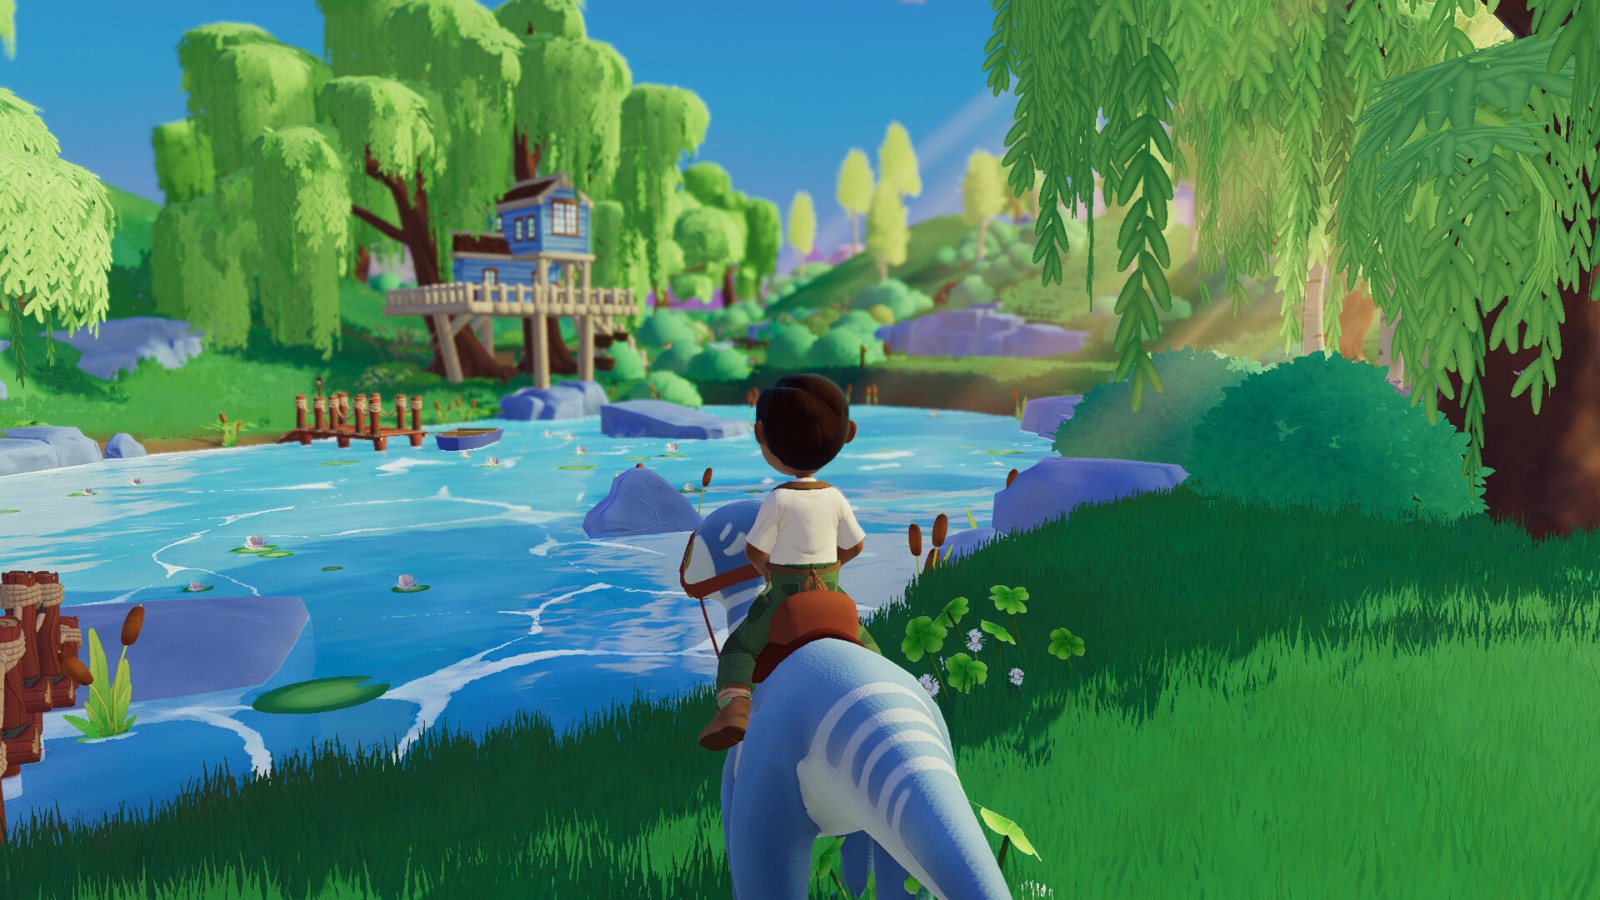 农场模拟游戏《Paleo Pines》今秋发售 登陆全平台 二次世界 第3张